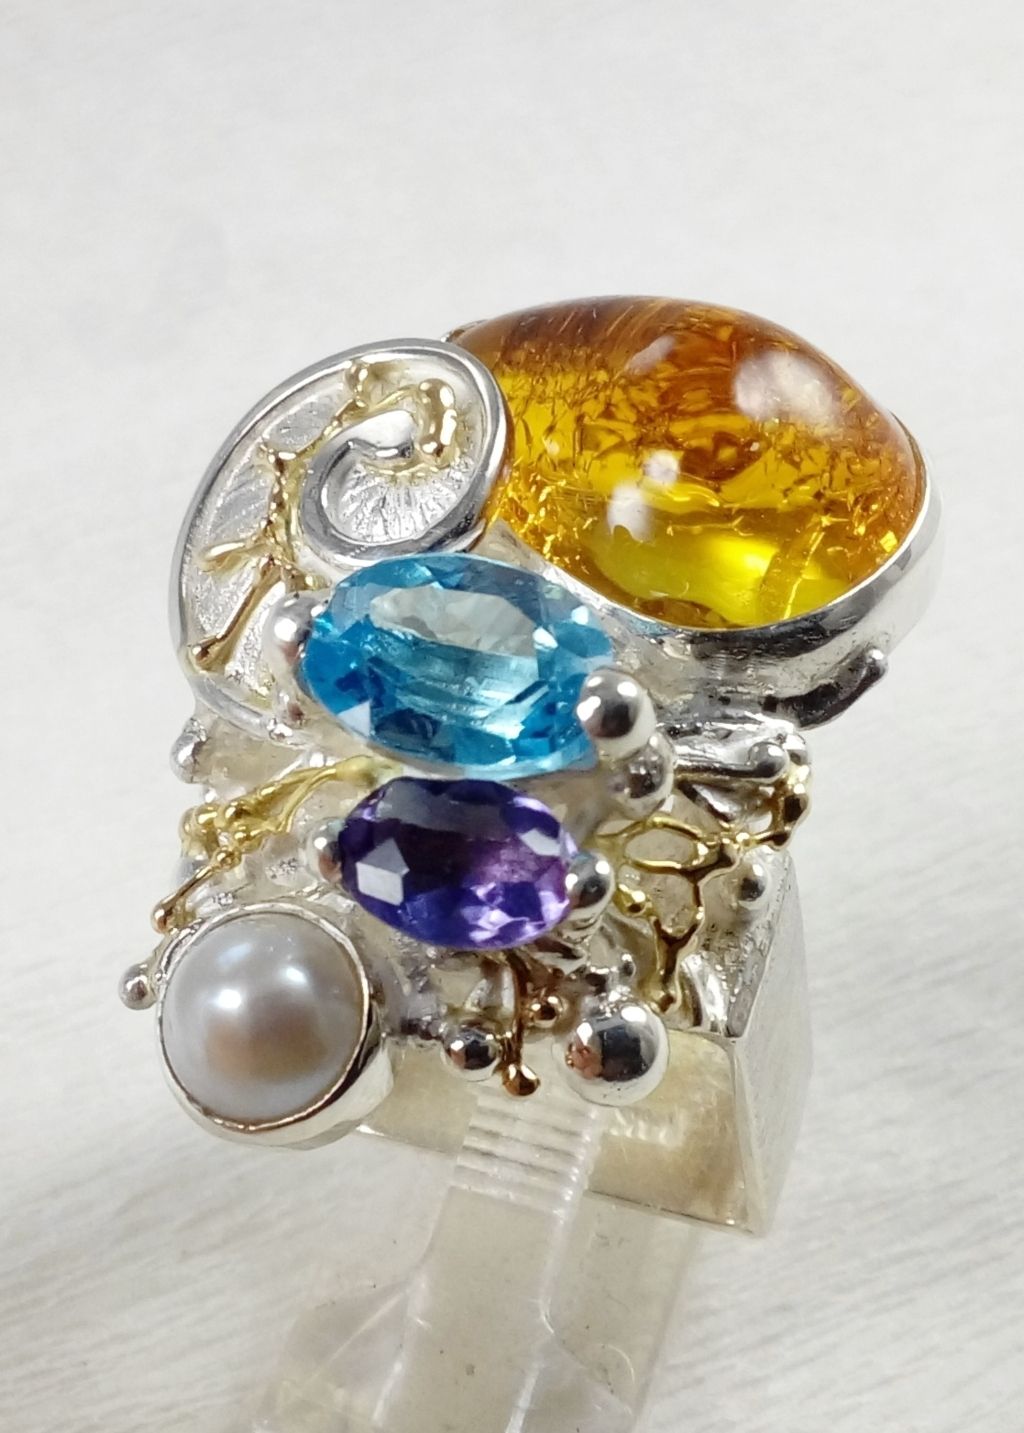 Gregory Pyra Piro řemeslník vyrobil stříbrný a zlatý prsten 4822, řemeslný ručně vyráběný čtvercový prsten s jantarem, modrým topazem, ametystema perlami, unikátní kombinace jantaru s modrým topazem, ametystem, iolitema perlami